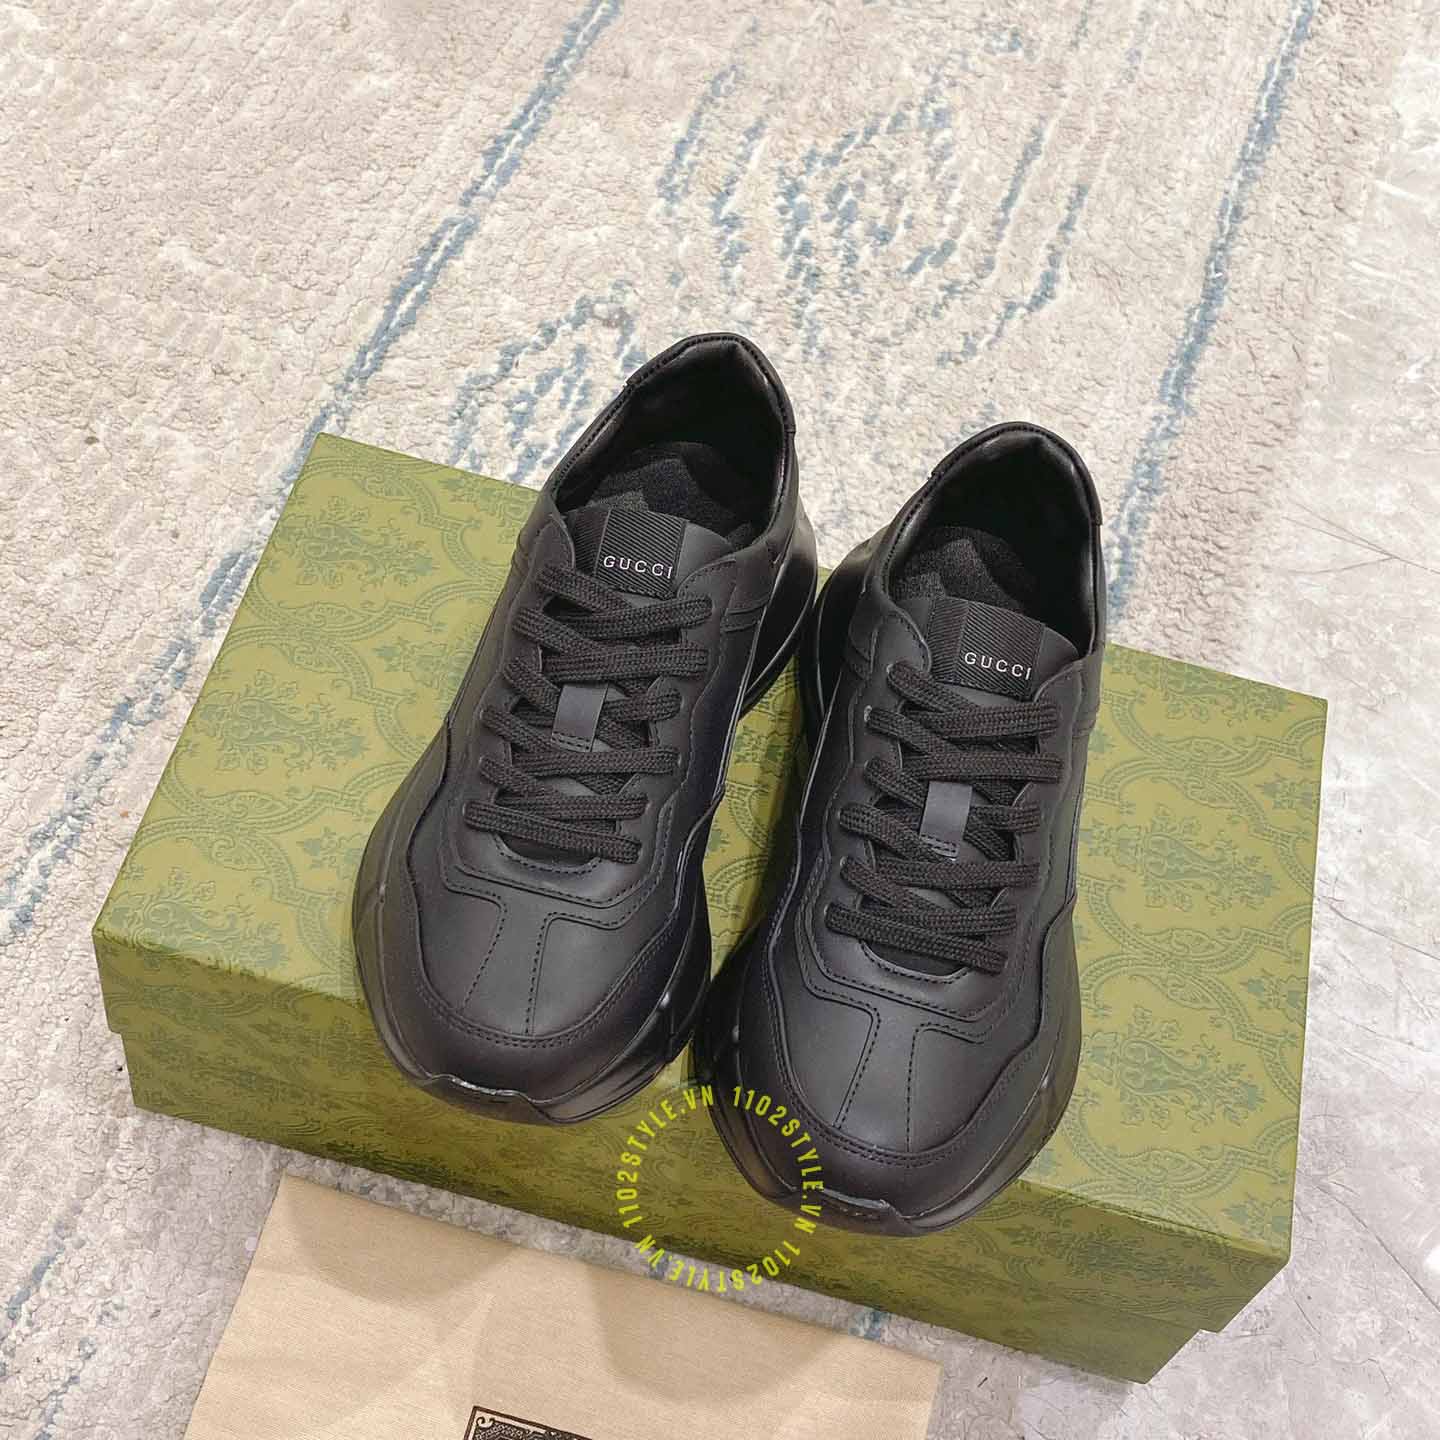 Giày Gucci Sneaker unisex màu đen replica 1:1 chính hãng